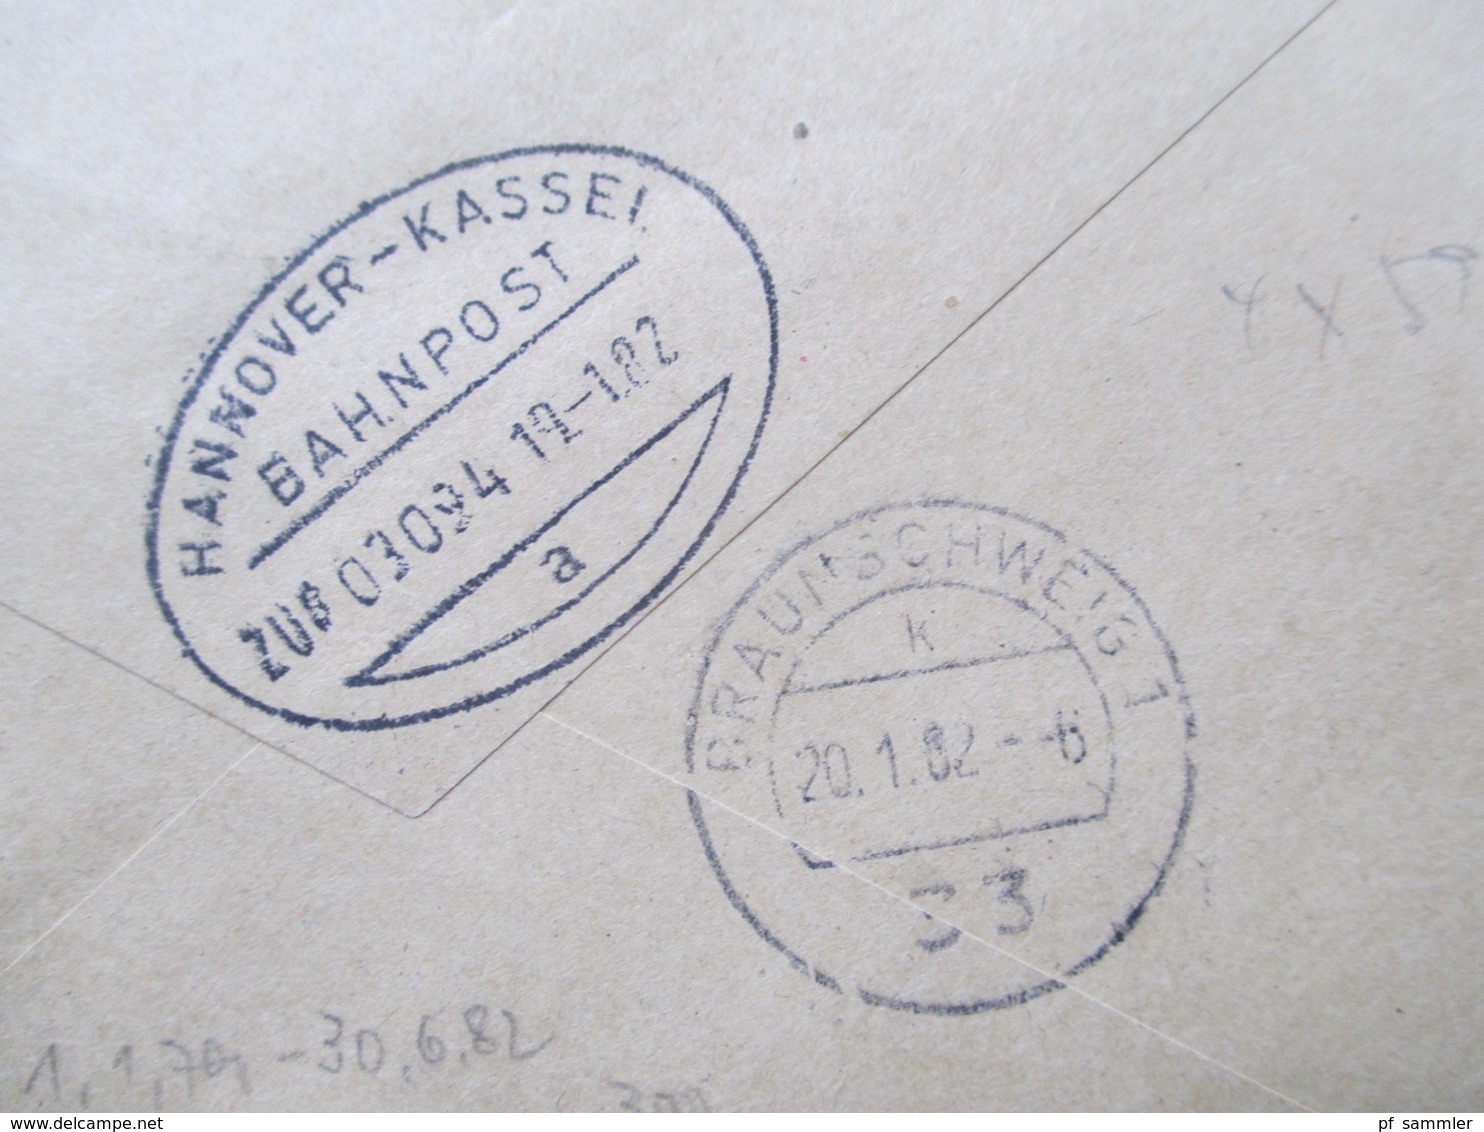 Berlin Freimarken BuS Nr. 590 Als 4er Block. Portogerecht! Wertbrief / Eilzustellung / Eigenhändig! Bahnpost - Covers & Documents